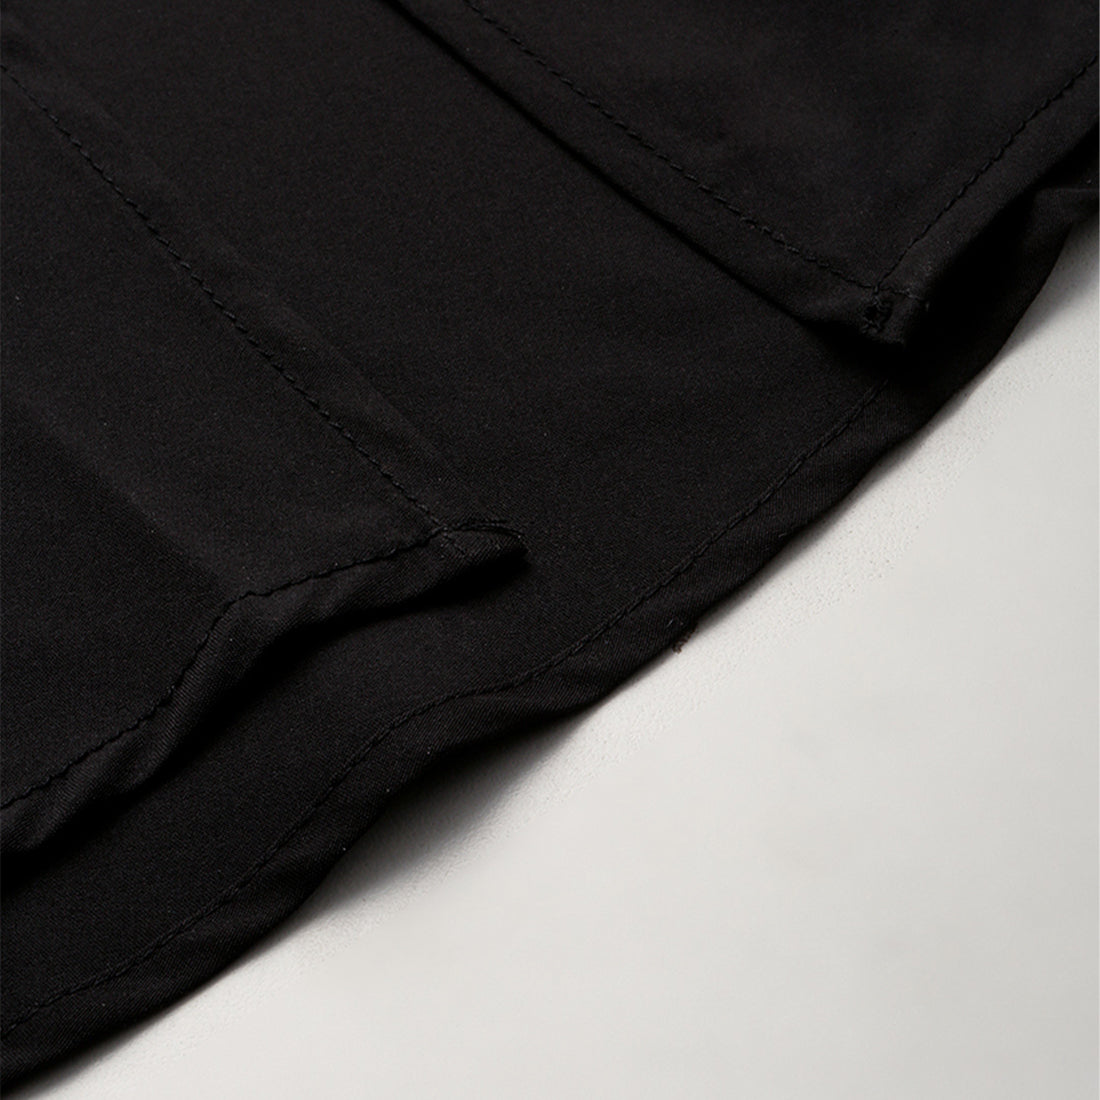 bow detail slit long skirt#color_black